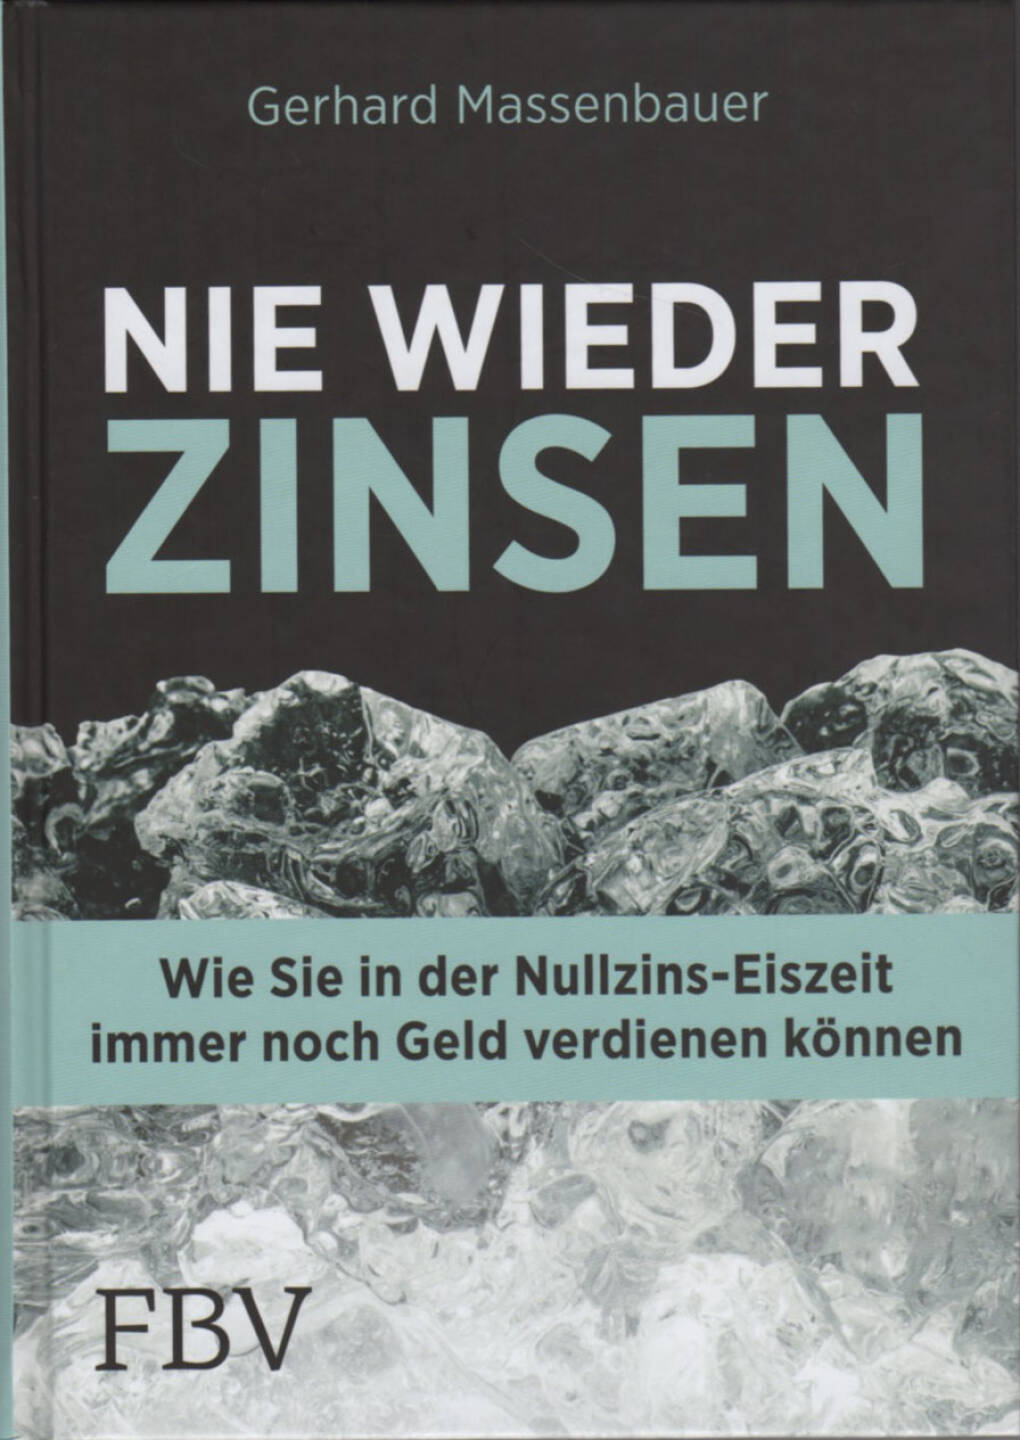 Gerhard Massenbauer - Nie wieder Zinsen - http://boerse-social.com/financebooks/show/gerhard_massenbauer_-_nie_wieder_zinsen_wie_sie_in_der_nullzins-eiszeit_immer_noch_geld_verdienen_konnen